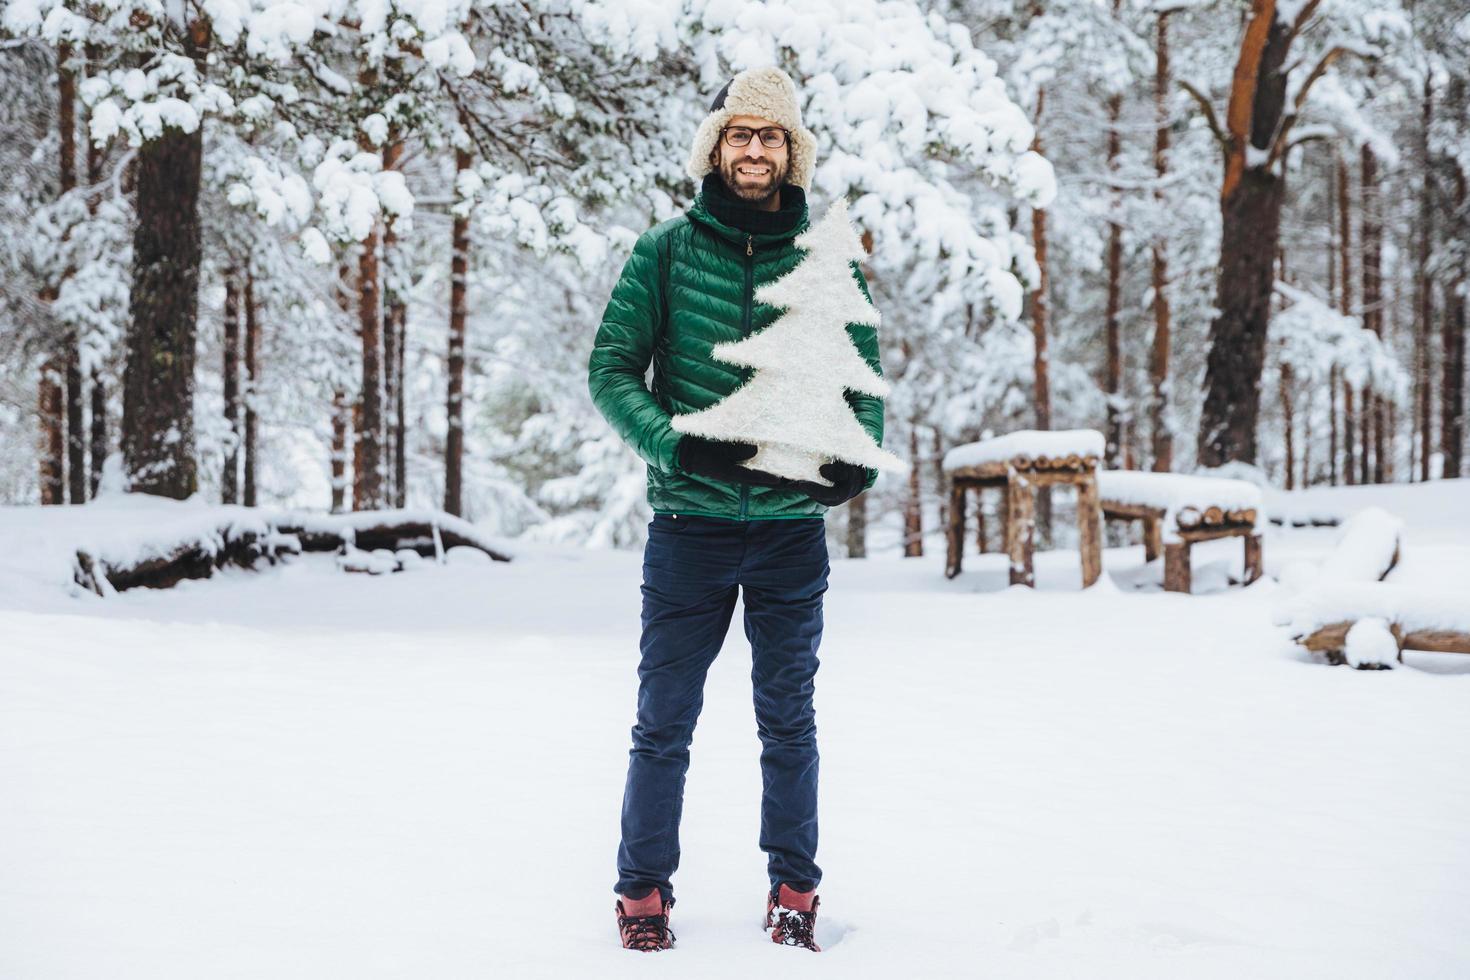 portrait d'un homme à la barbe épaisse et à la mousatche a une expression agréable, se promène dans la belle forêt d'hiver, tient un petit sapin artificiel blanc, fait de la publicité avant les vacances du nouvel an photo